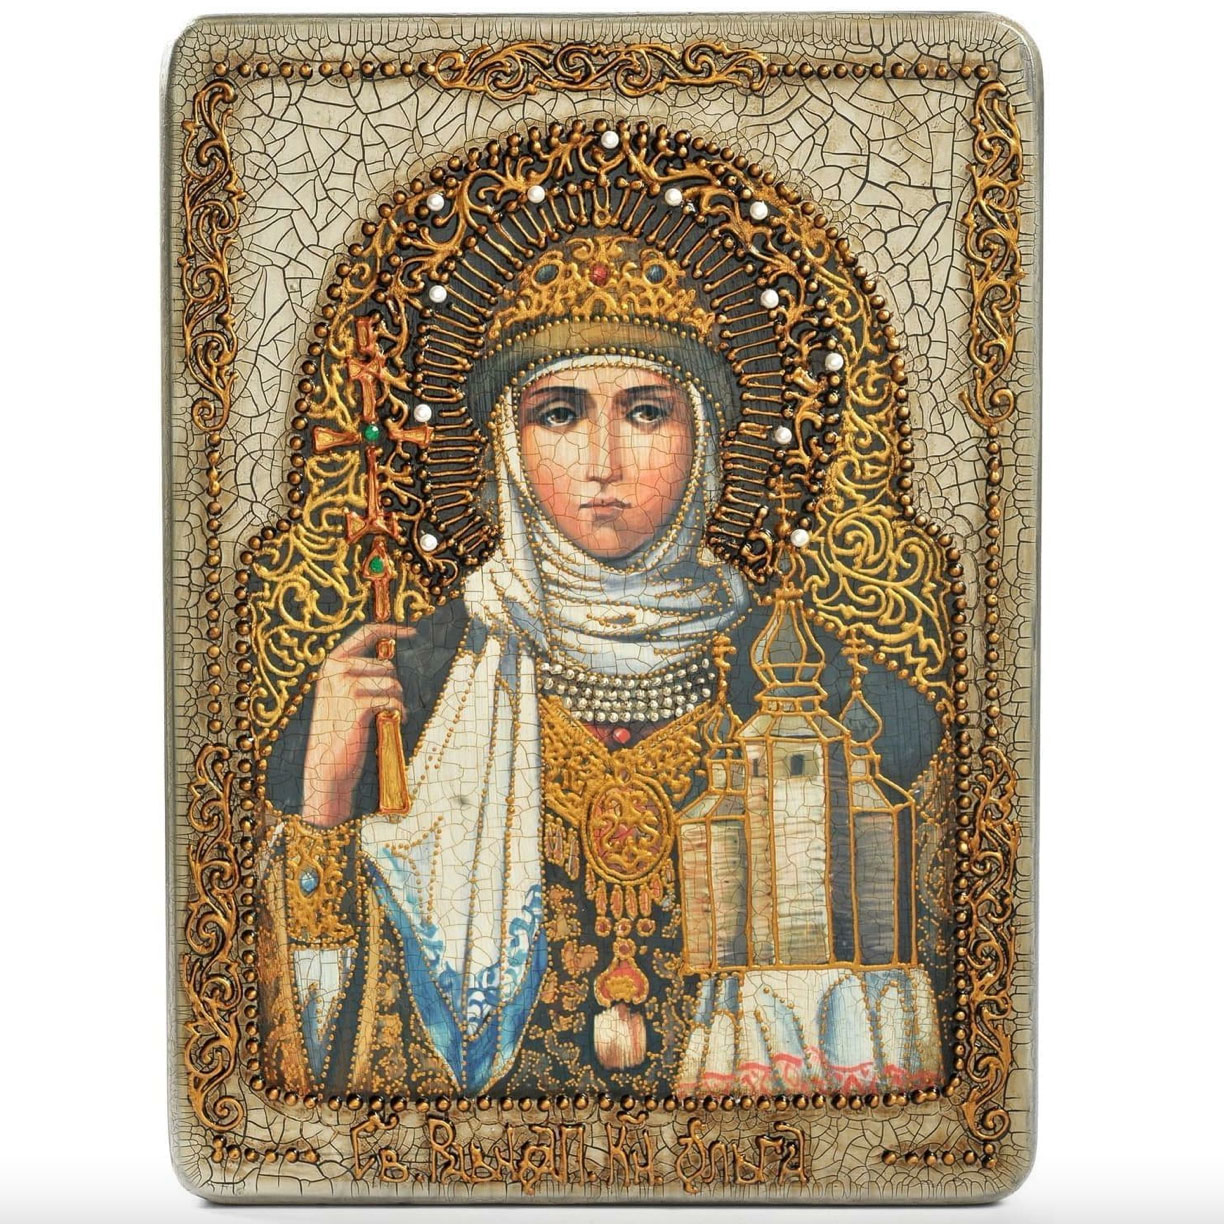 Подарочная икона "Святая Равноапостольная княгиня Ольга" на мореном дубе - артикул: 807622 | Мосподарок 